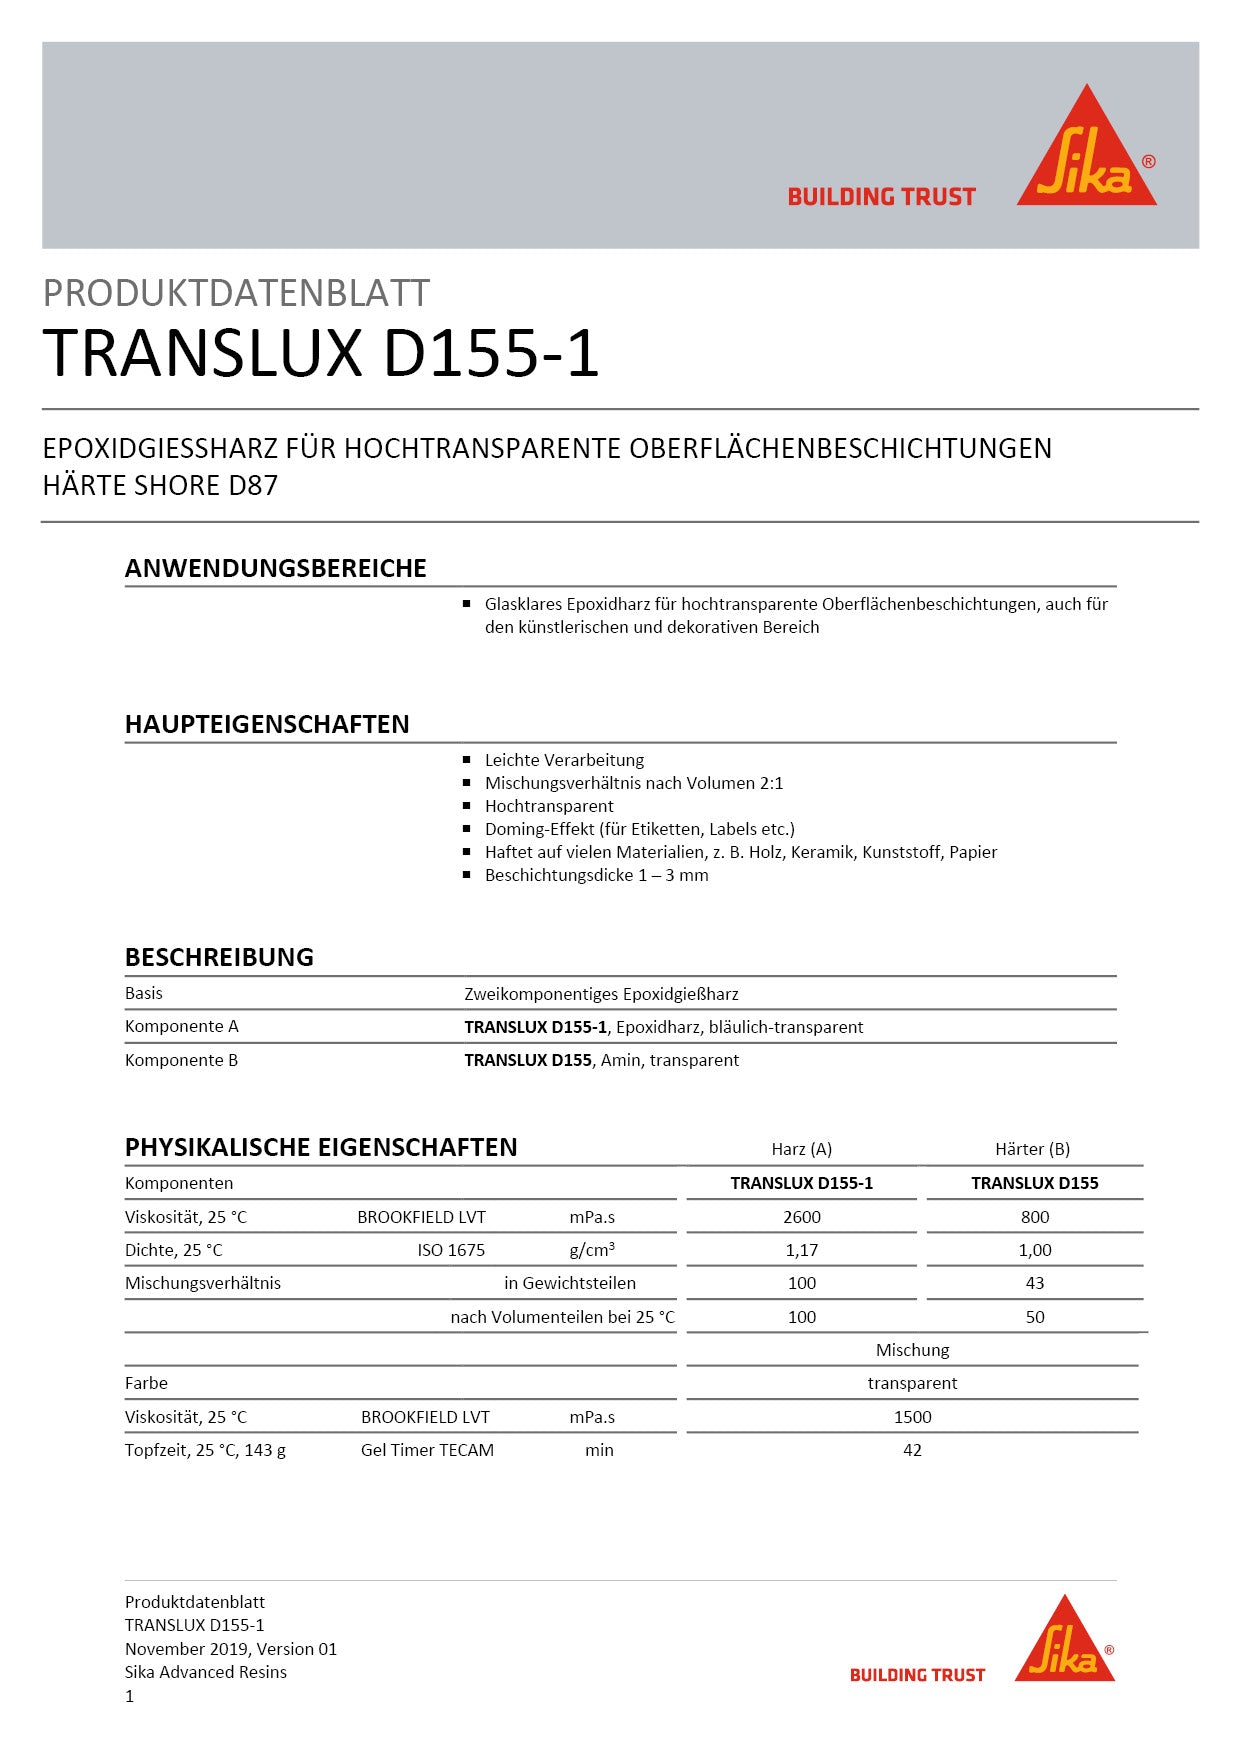 Biresin Translux D155 (Harz + Härter) 7.15kg - für hochtransparente Oberflächenbeschichtung